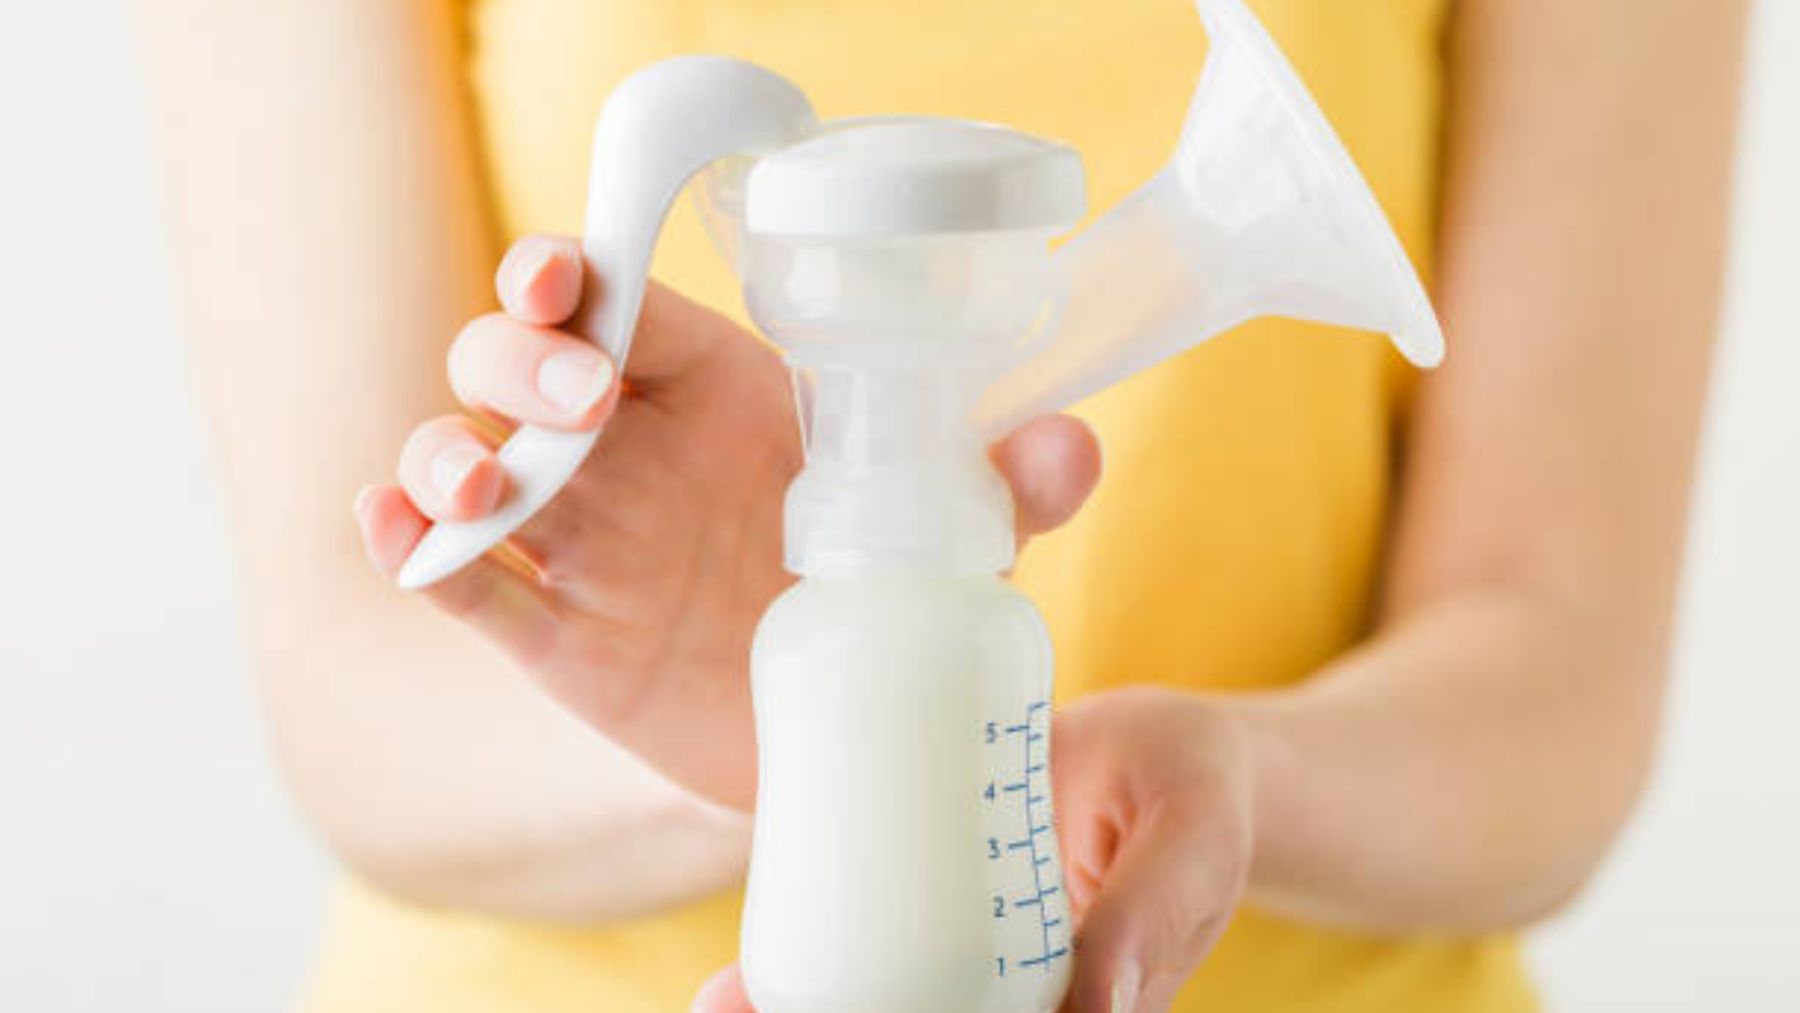 Los mejores consejos para extraer la leche materna